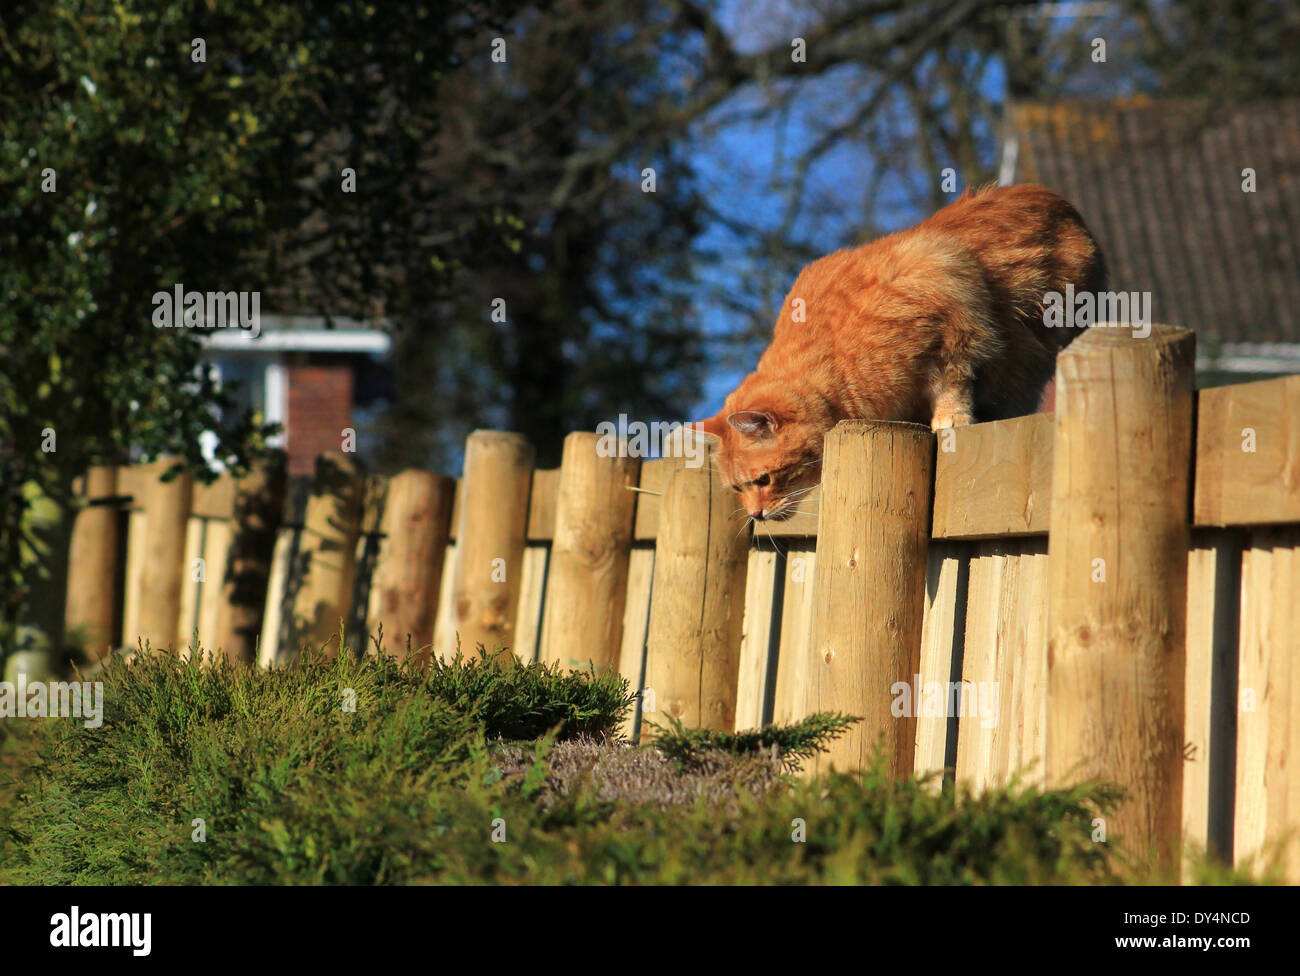 Le gingembre cat la chasse sur jardin clôture Banque D'Images